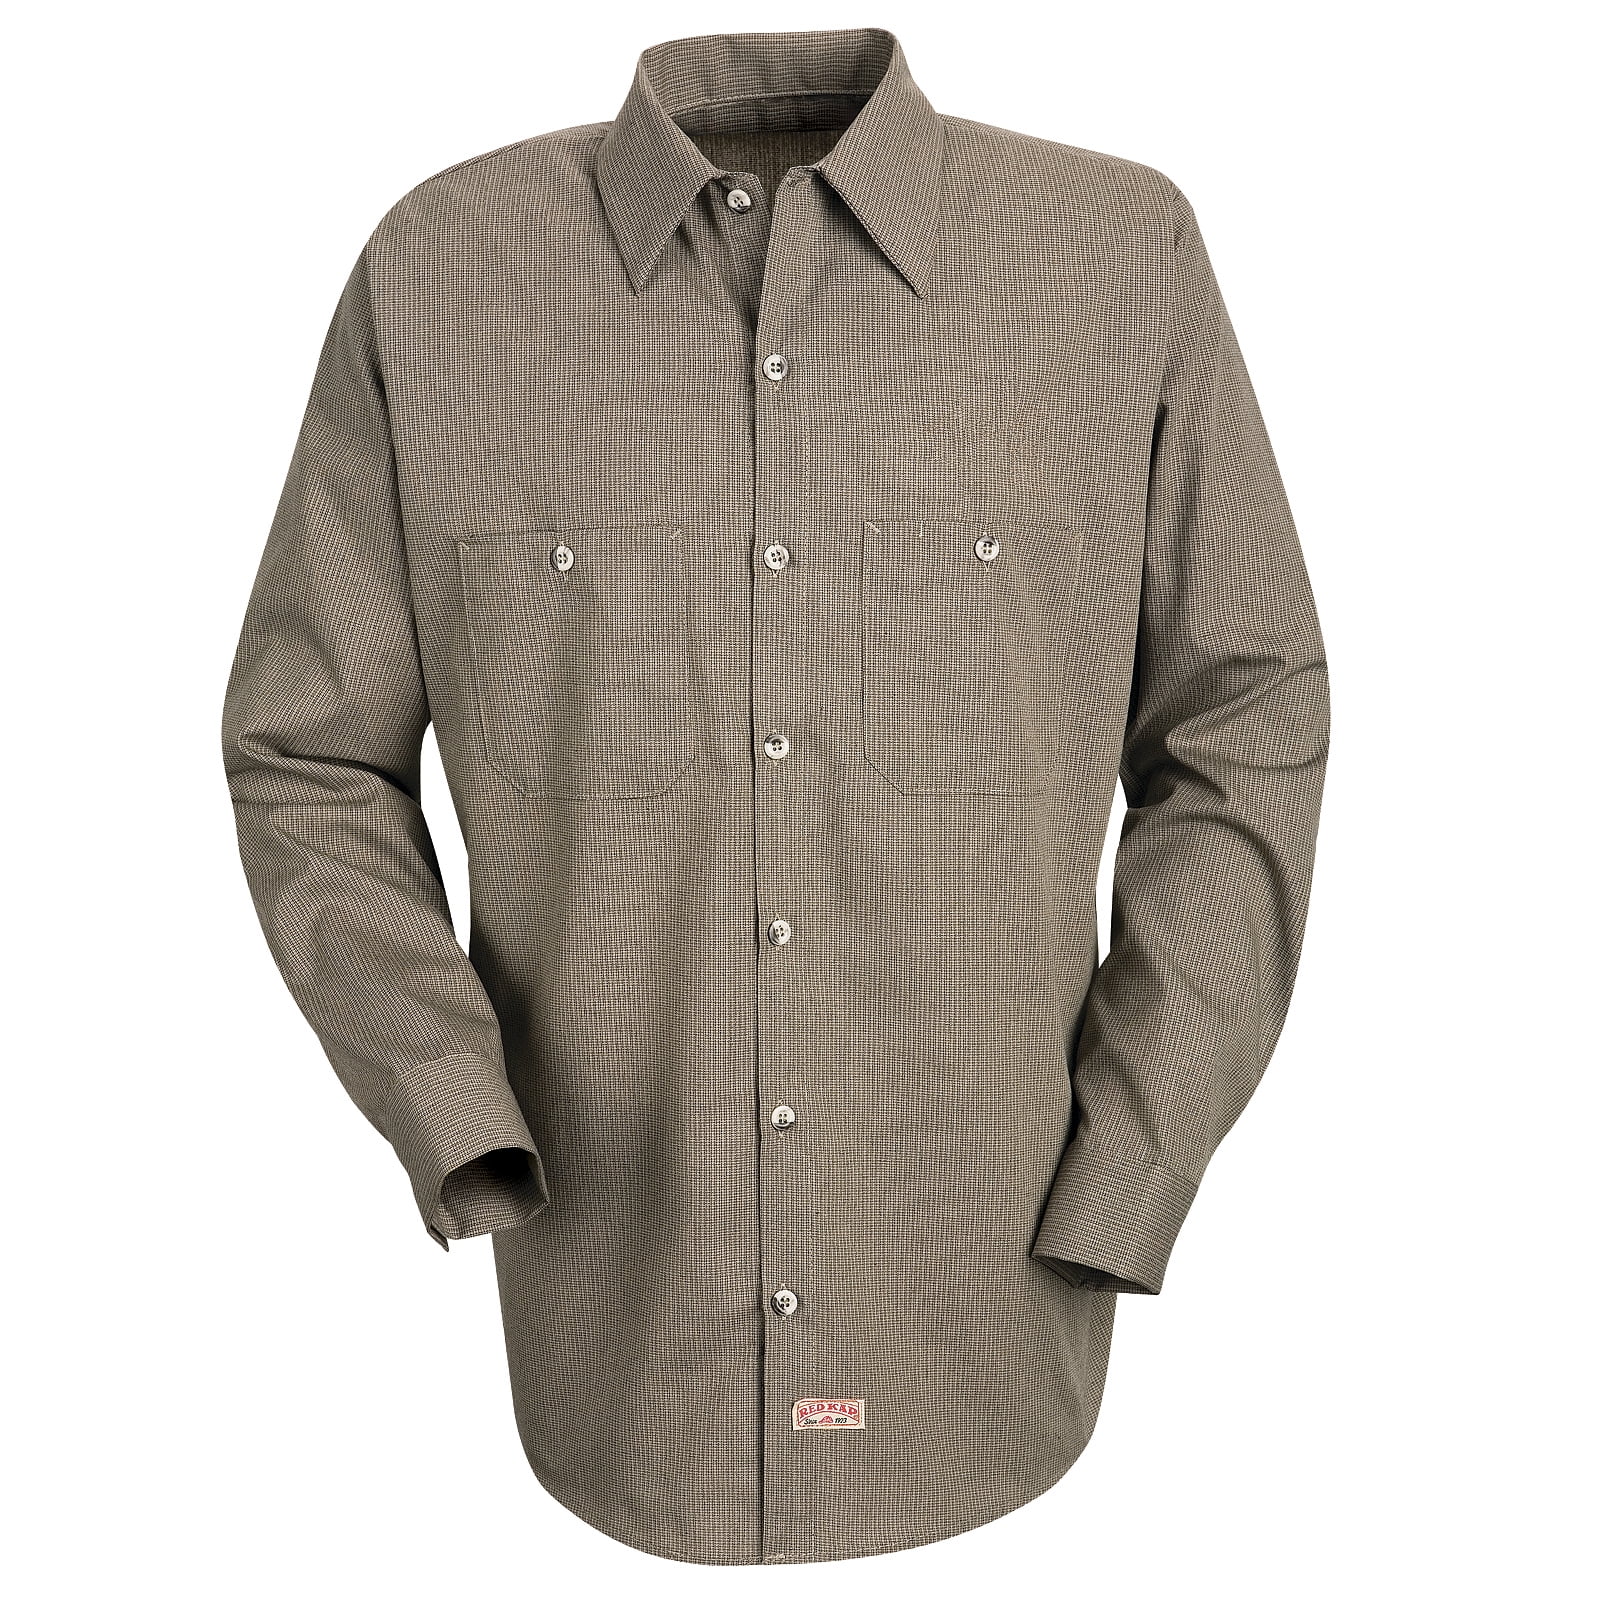 Details about   OPEN BOX Returns Men's Long Sleeve Cotton Blend Button Up Work Dress Shirt